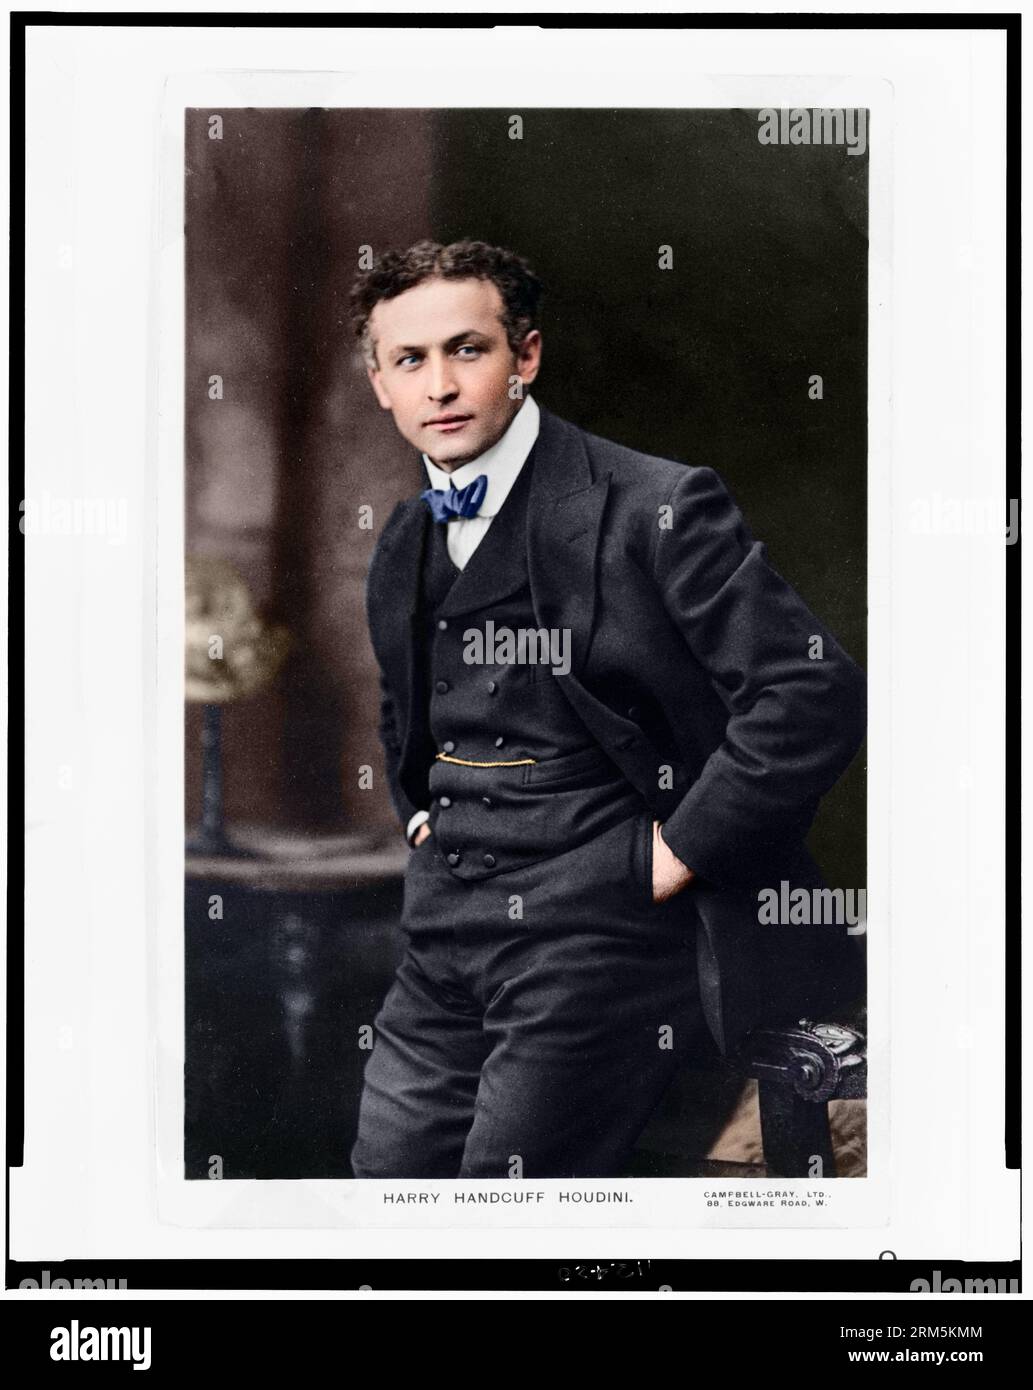 Harry "Handschellen" Houdini. Ungefähr 1913. Dreiviertel langes Hochformat, nach vorne gerichtet. Stockfoto